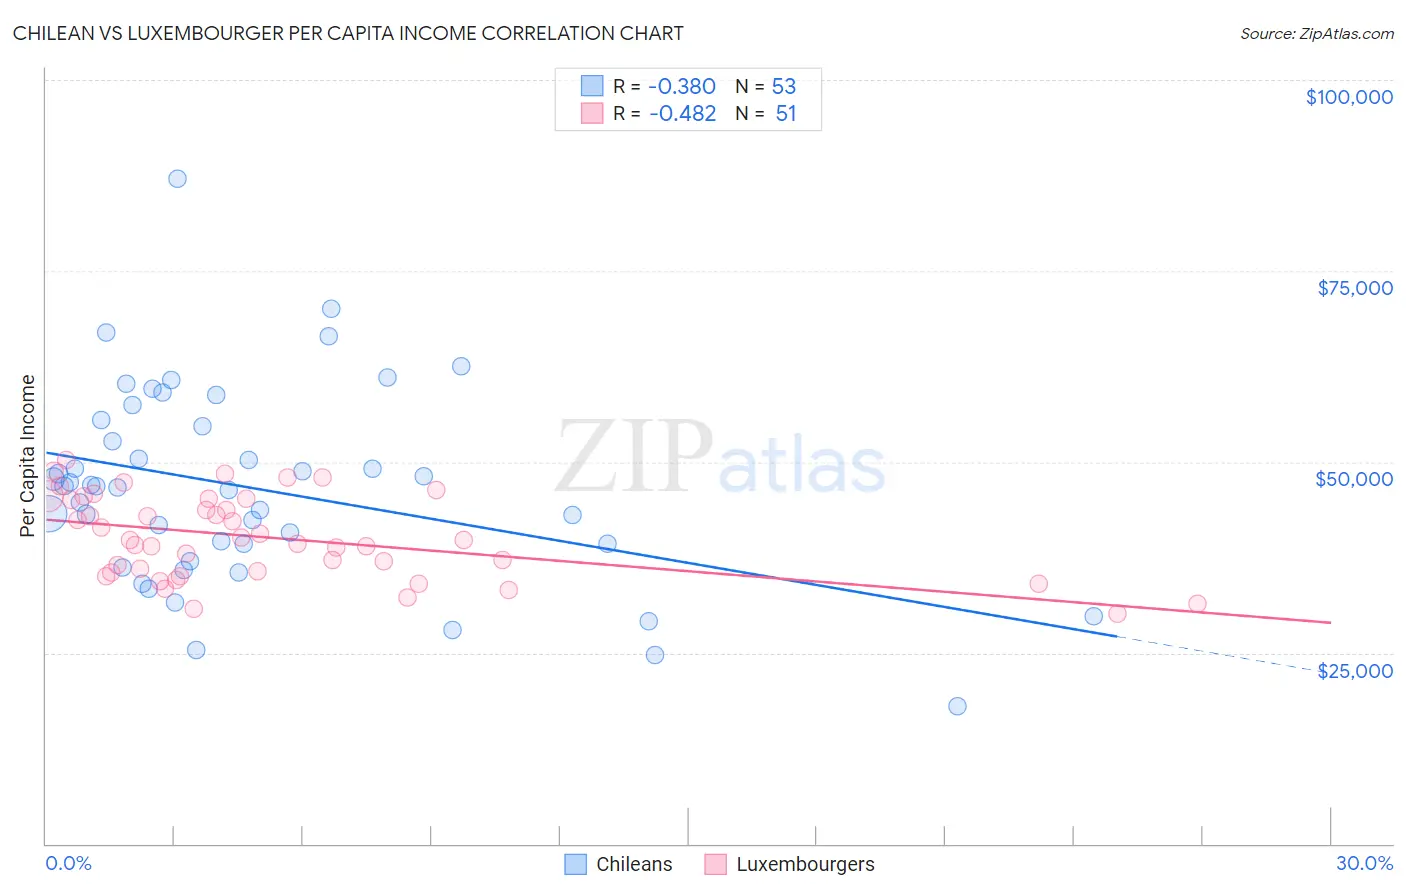 Chilean vs Luxembourger Per Capita Income